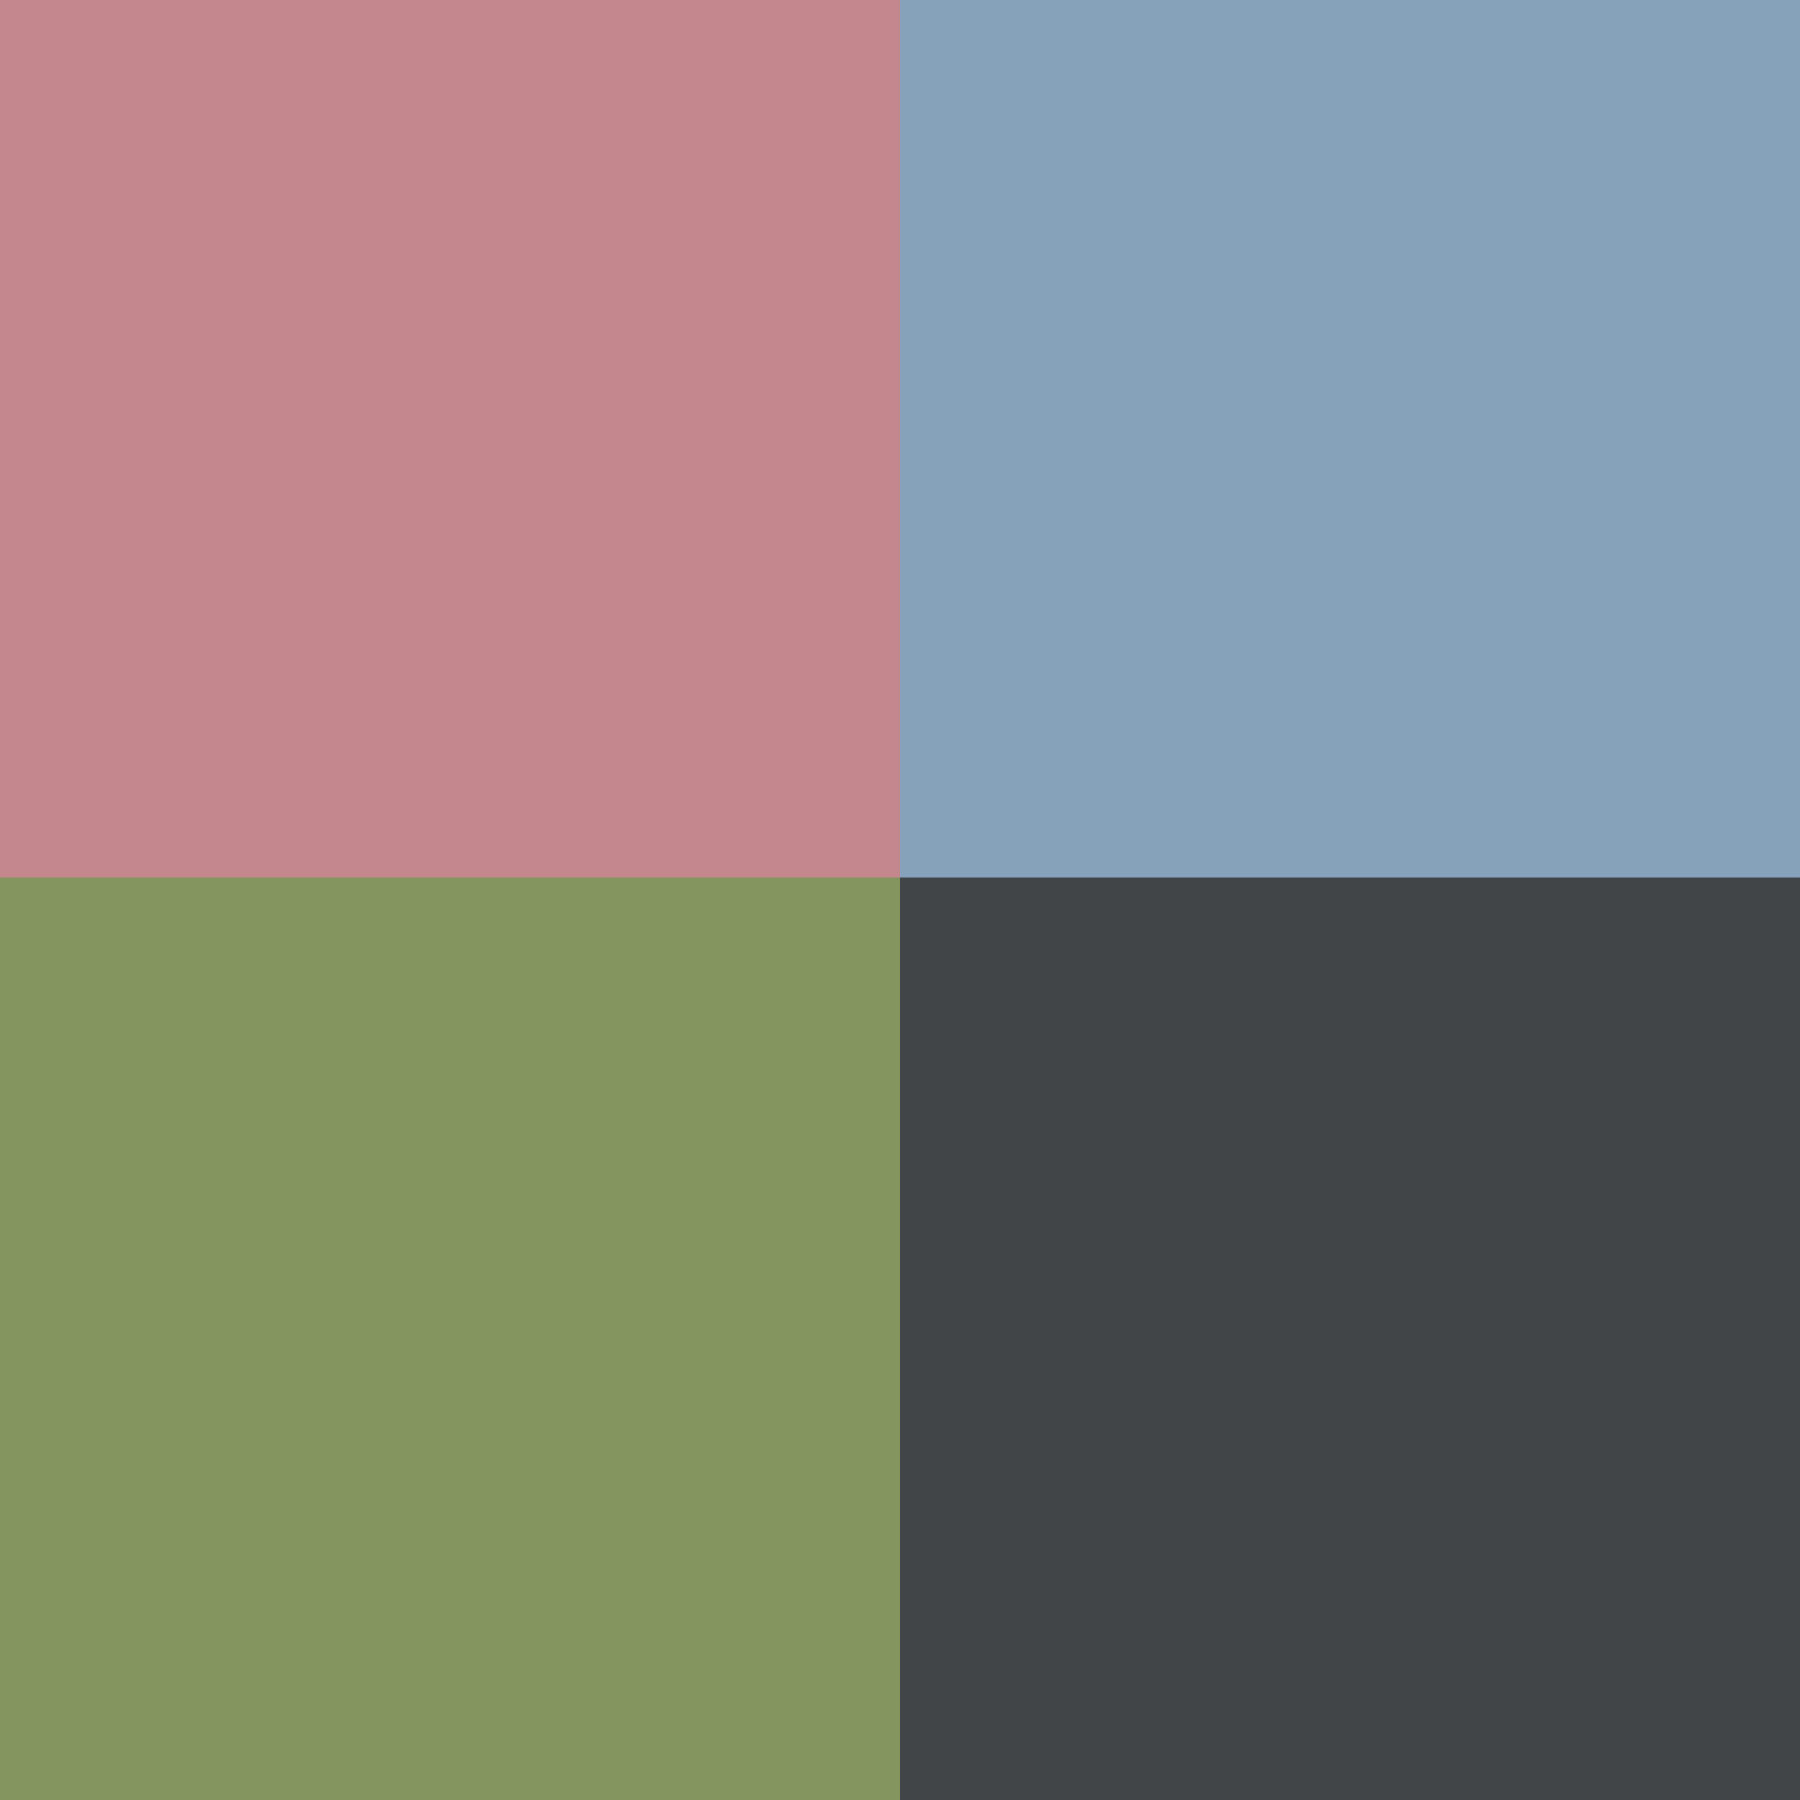 Farben des PAIDI Kinderschreibtischstuhls Jooki: Rosa, Hellblau, Grün und Dunkelgrau.